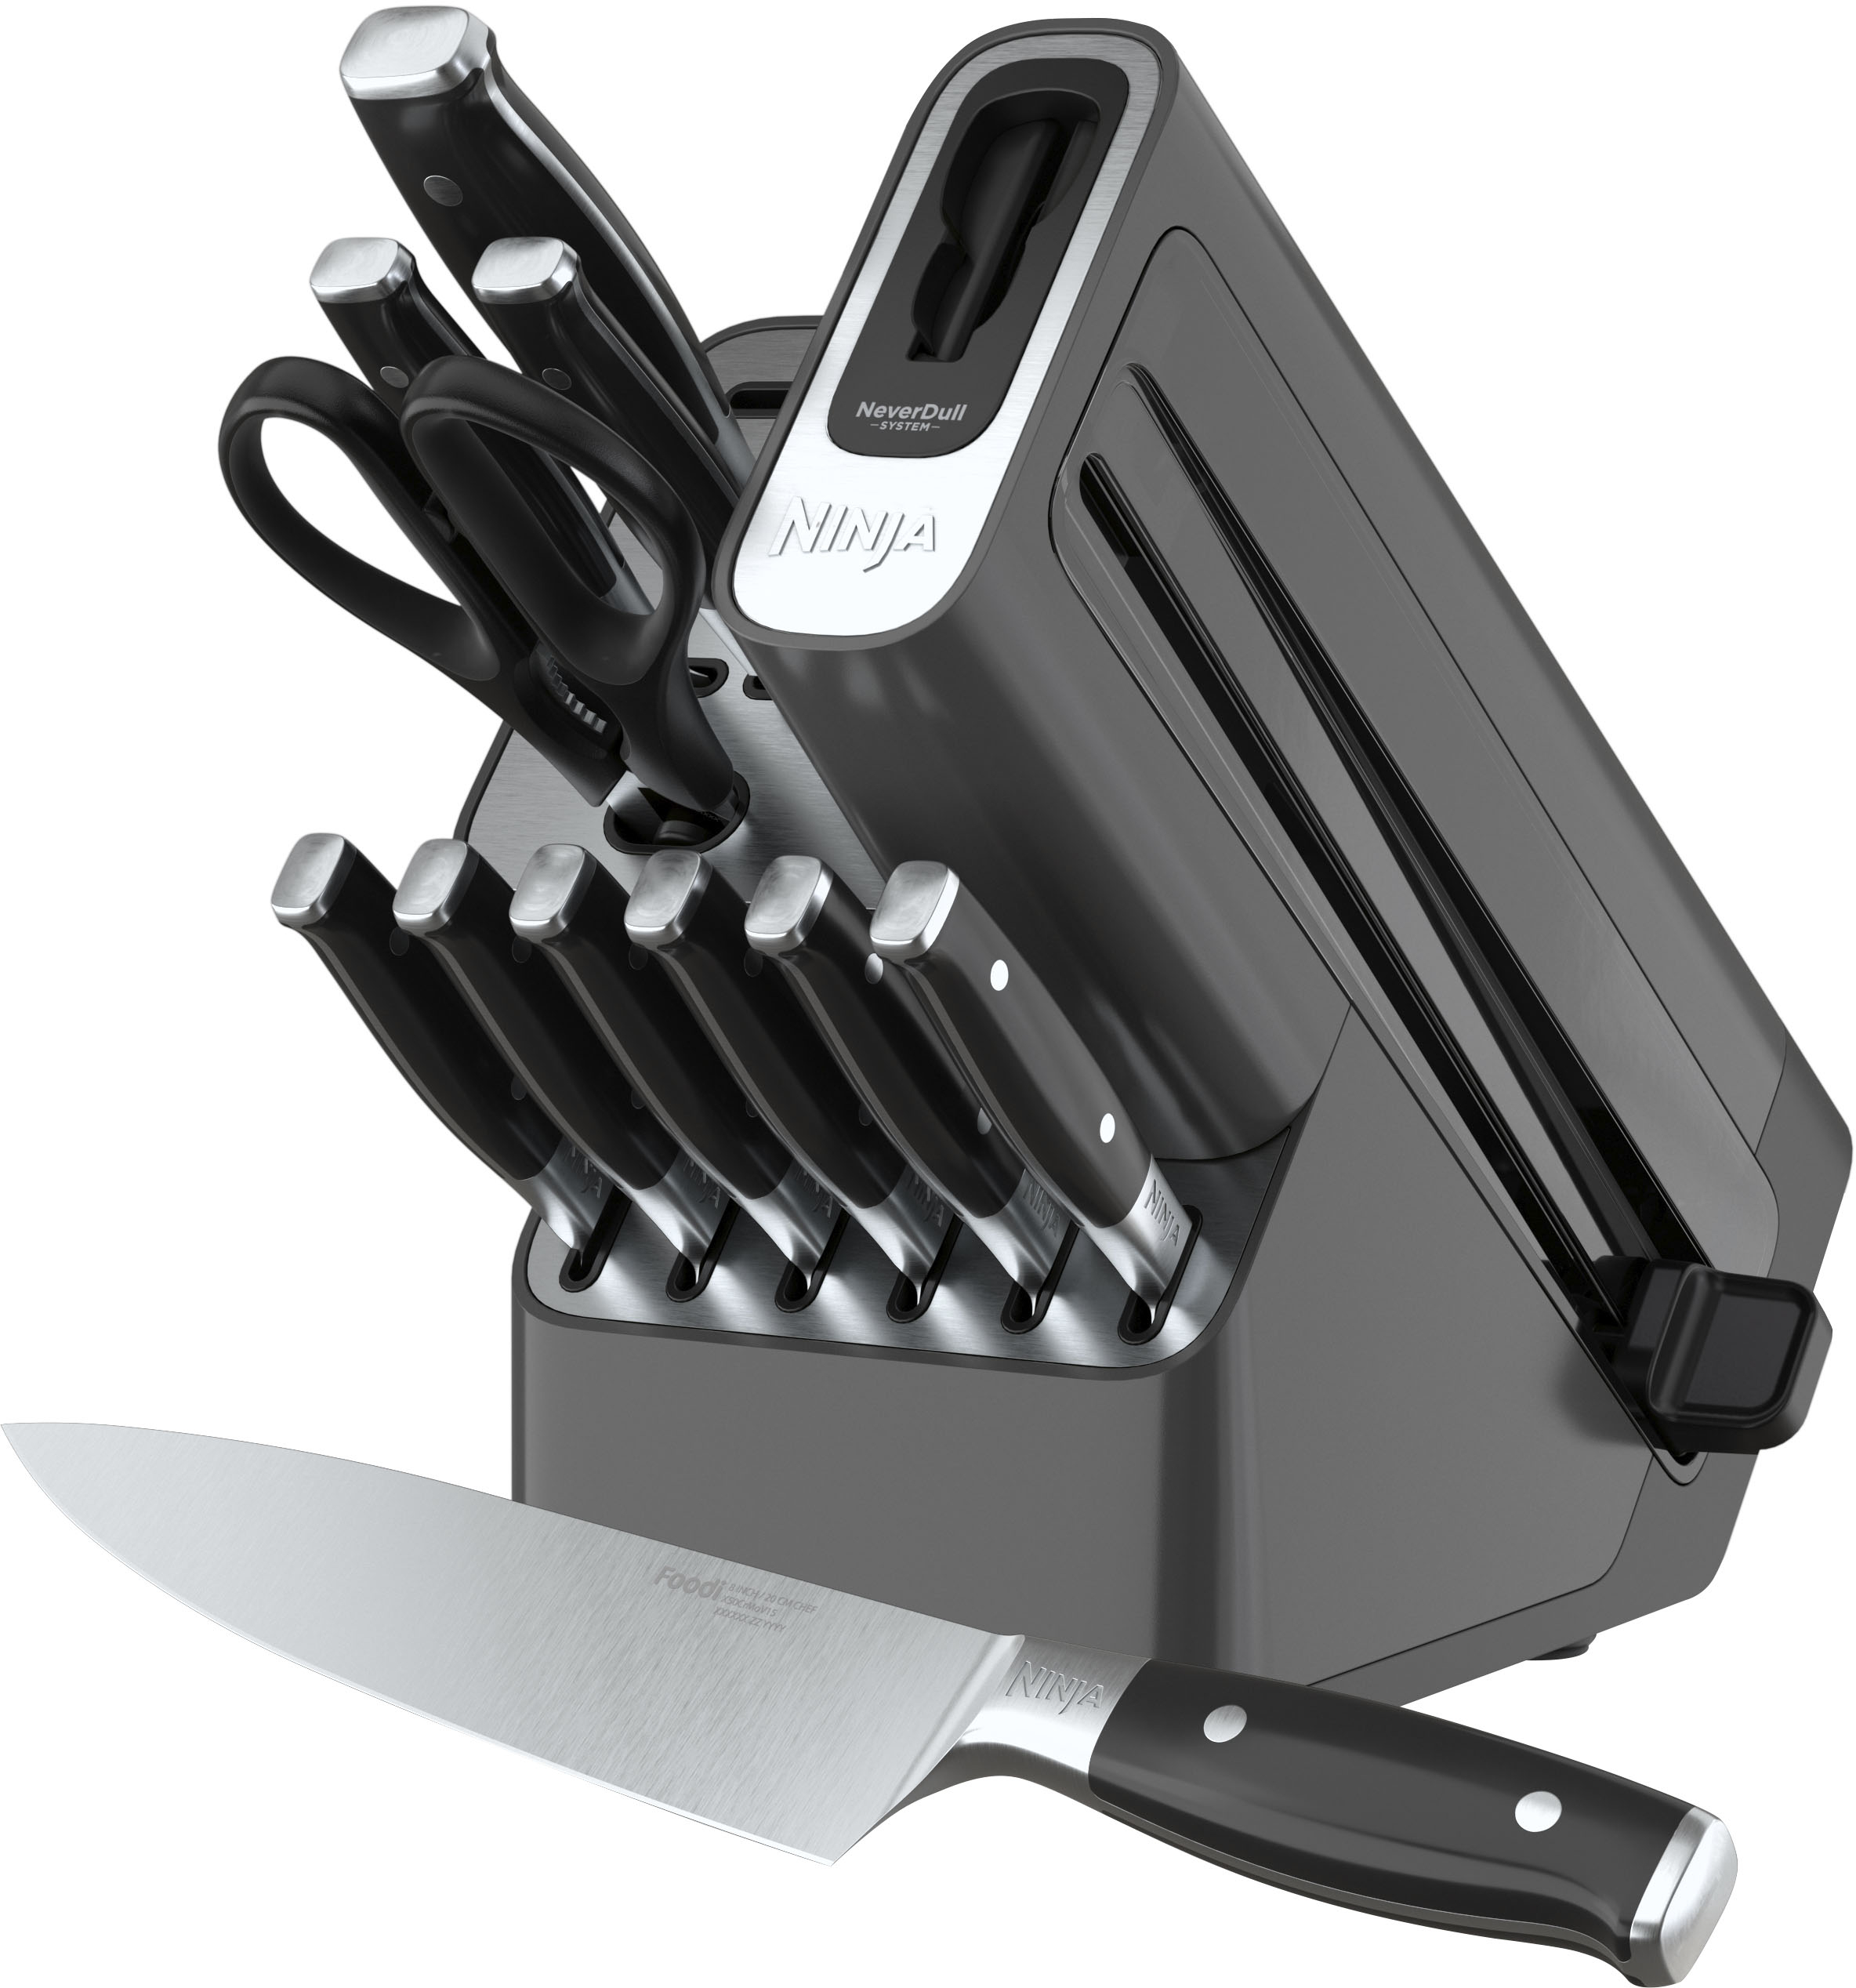 Kitchen knife Set - Back in Black